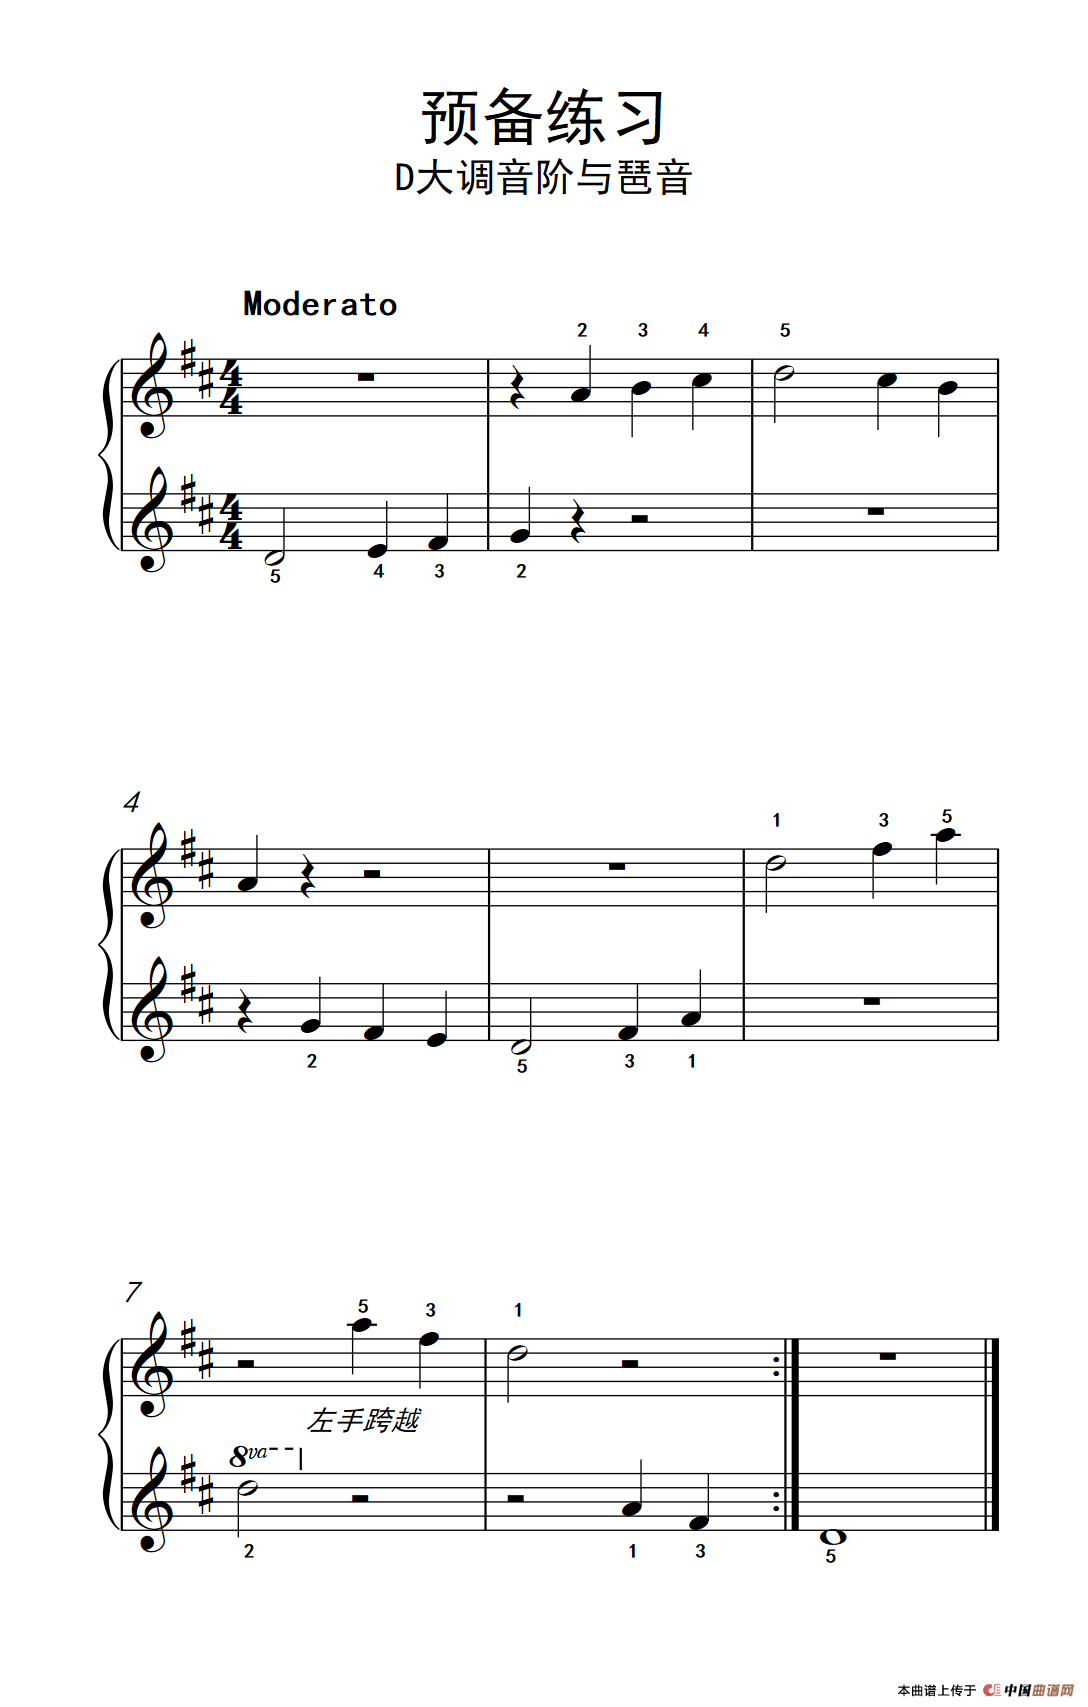 《预备练习 D大调音阶与琶音》钢琴曲谱图分享